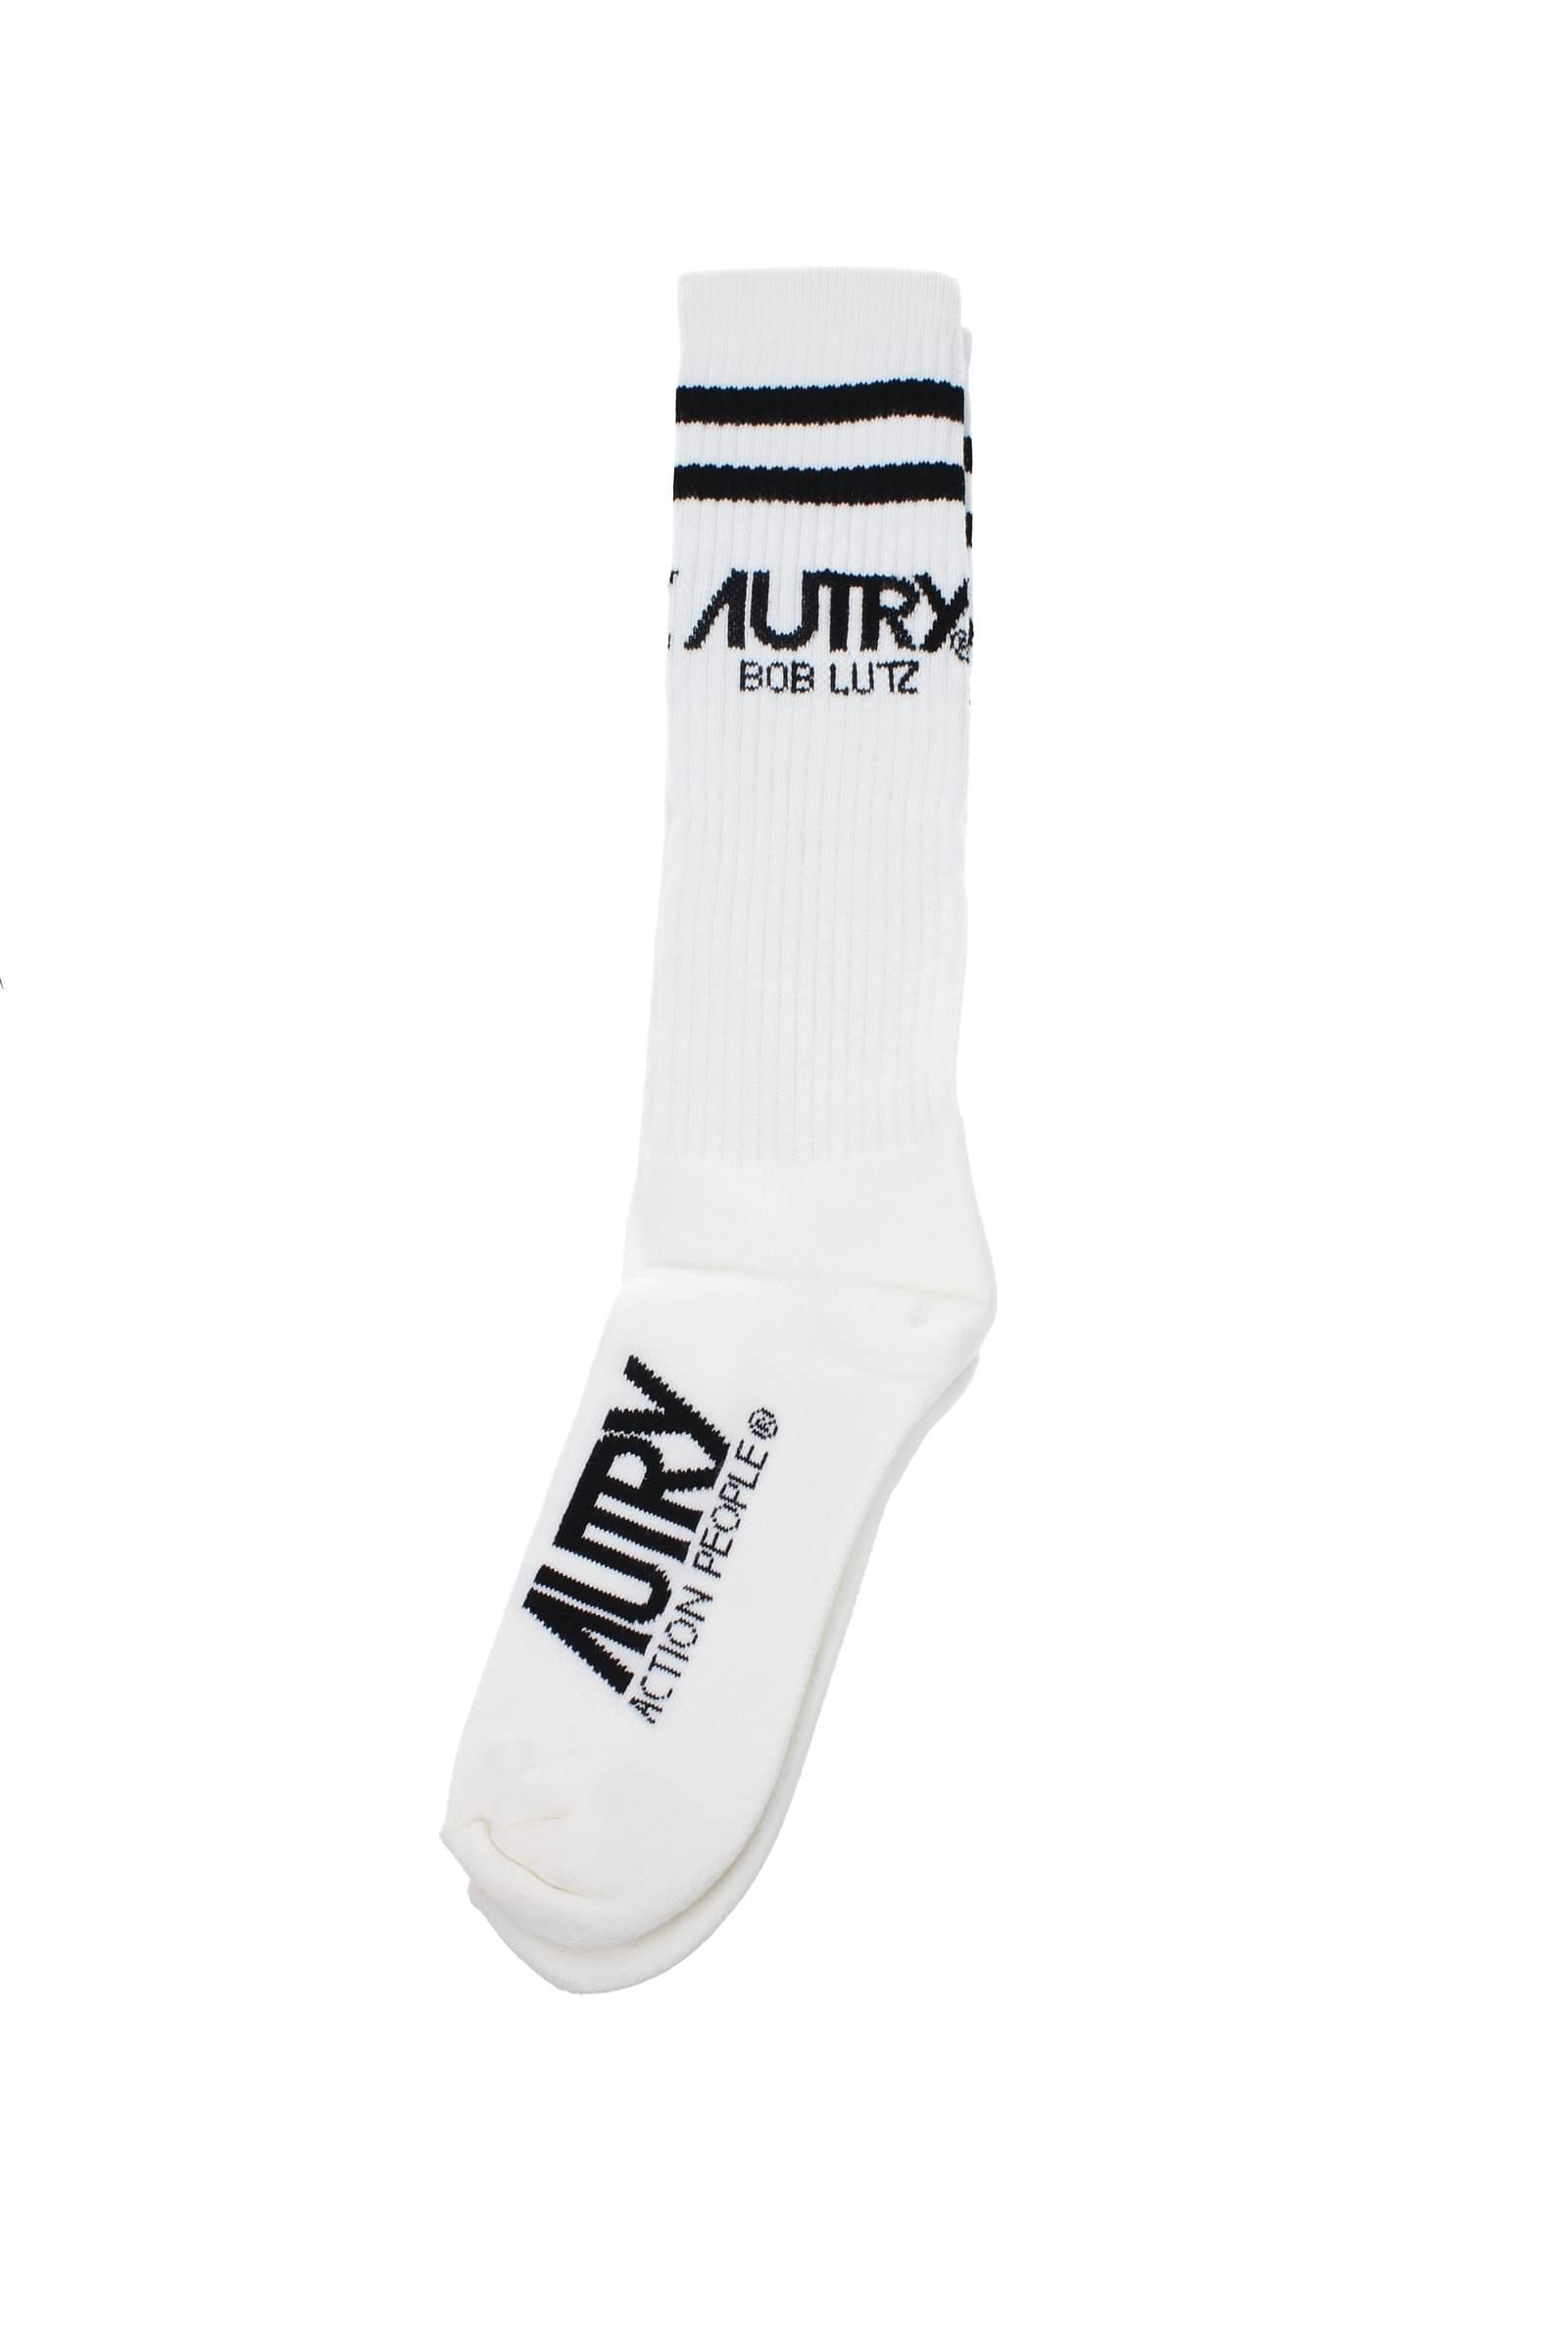 Autry Short Socks Cotton Bottle in White